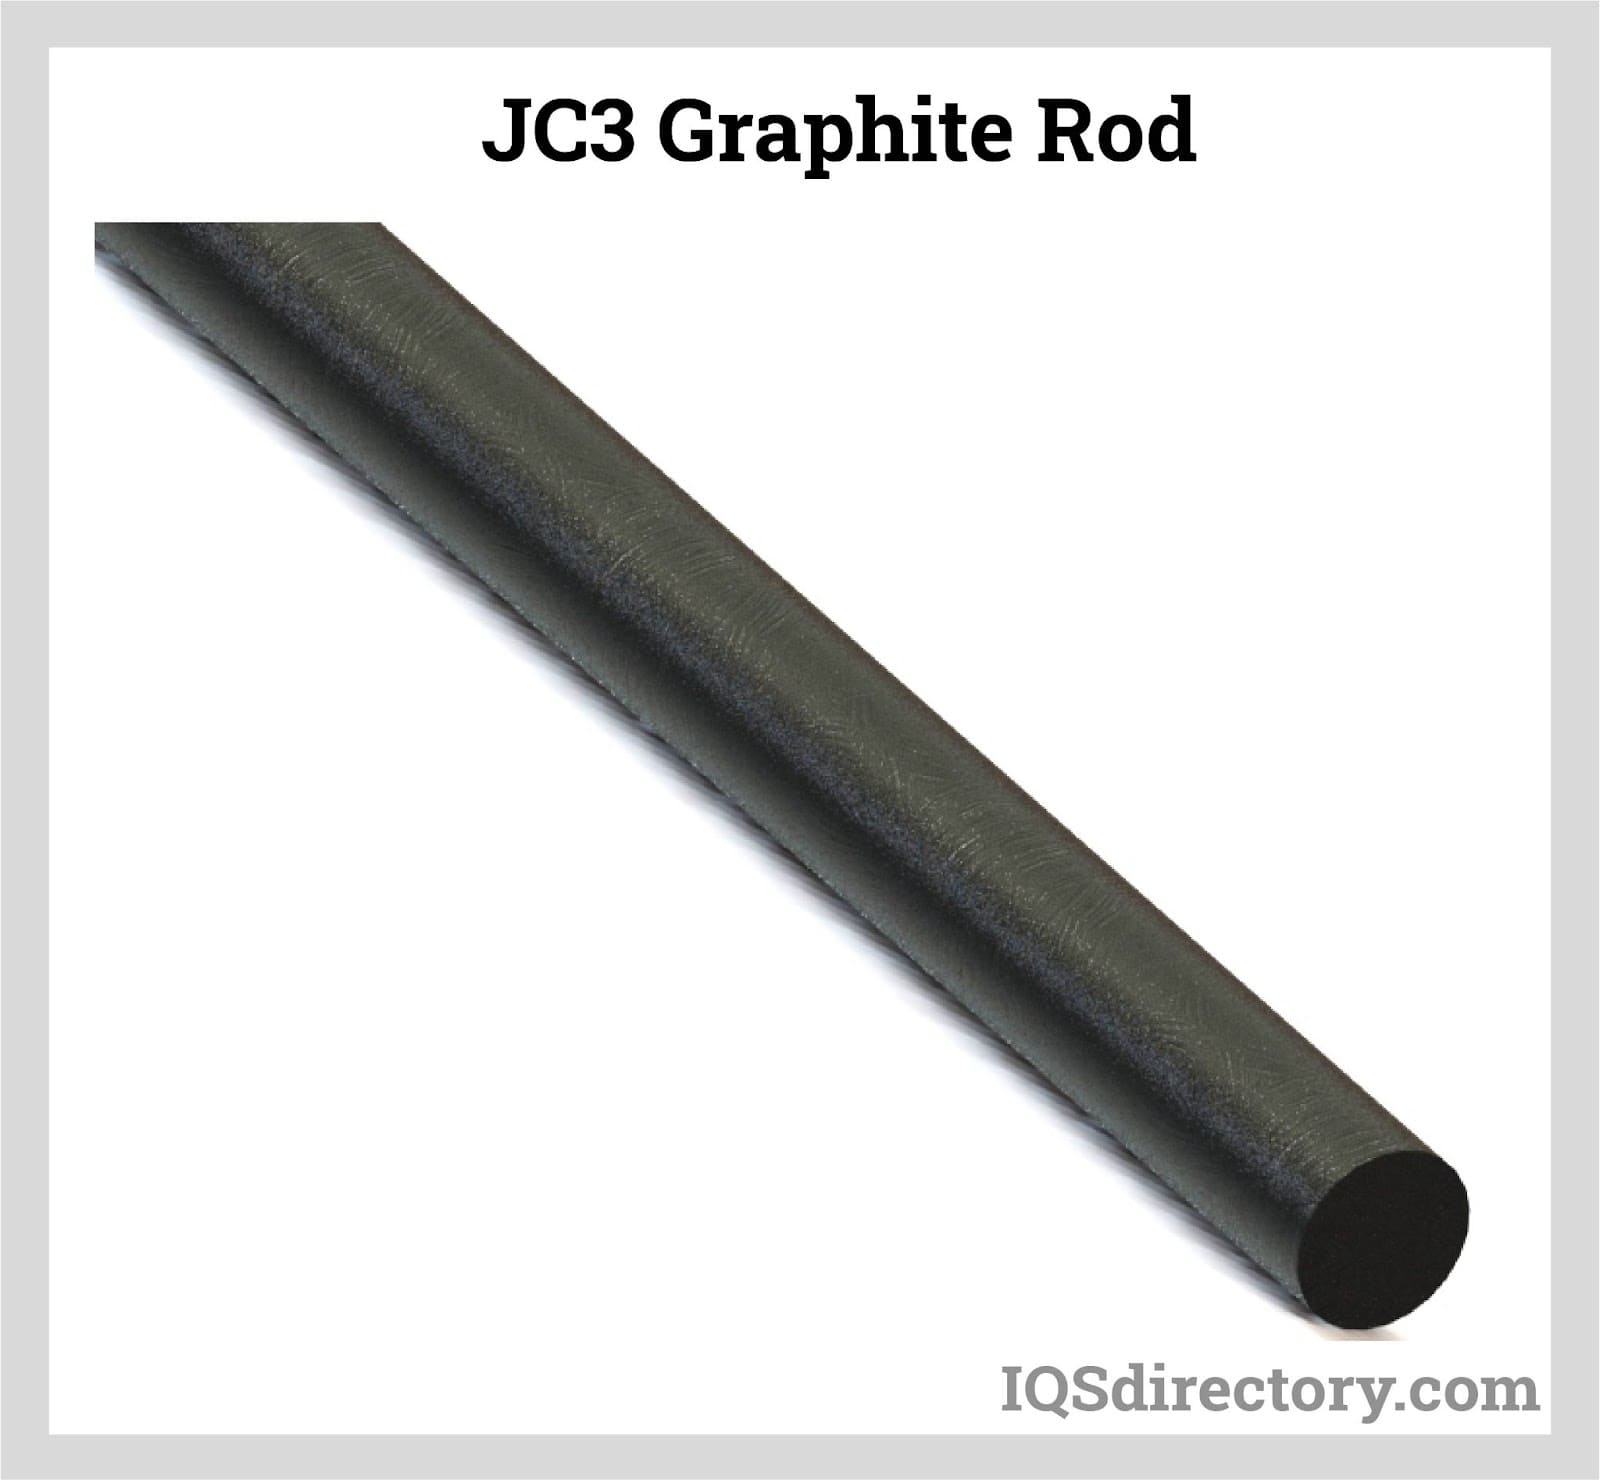 JC3 Graphite Rod